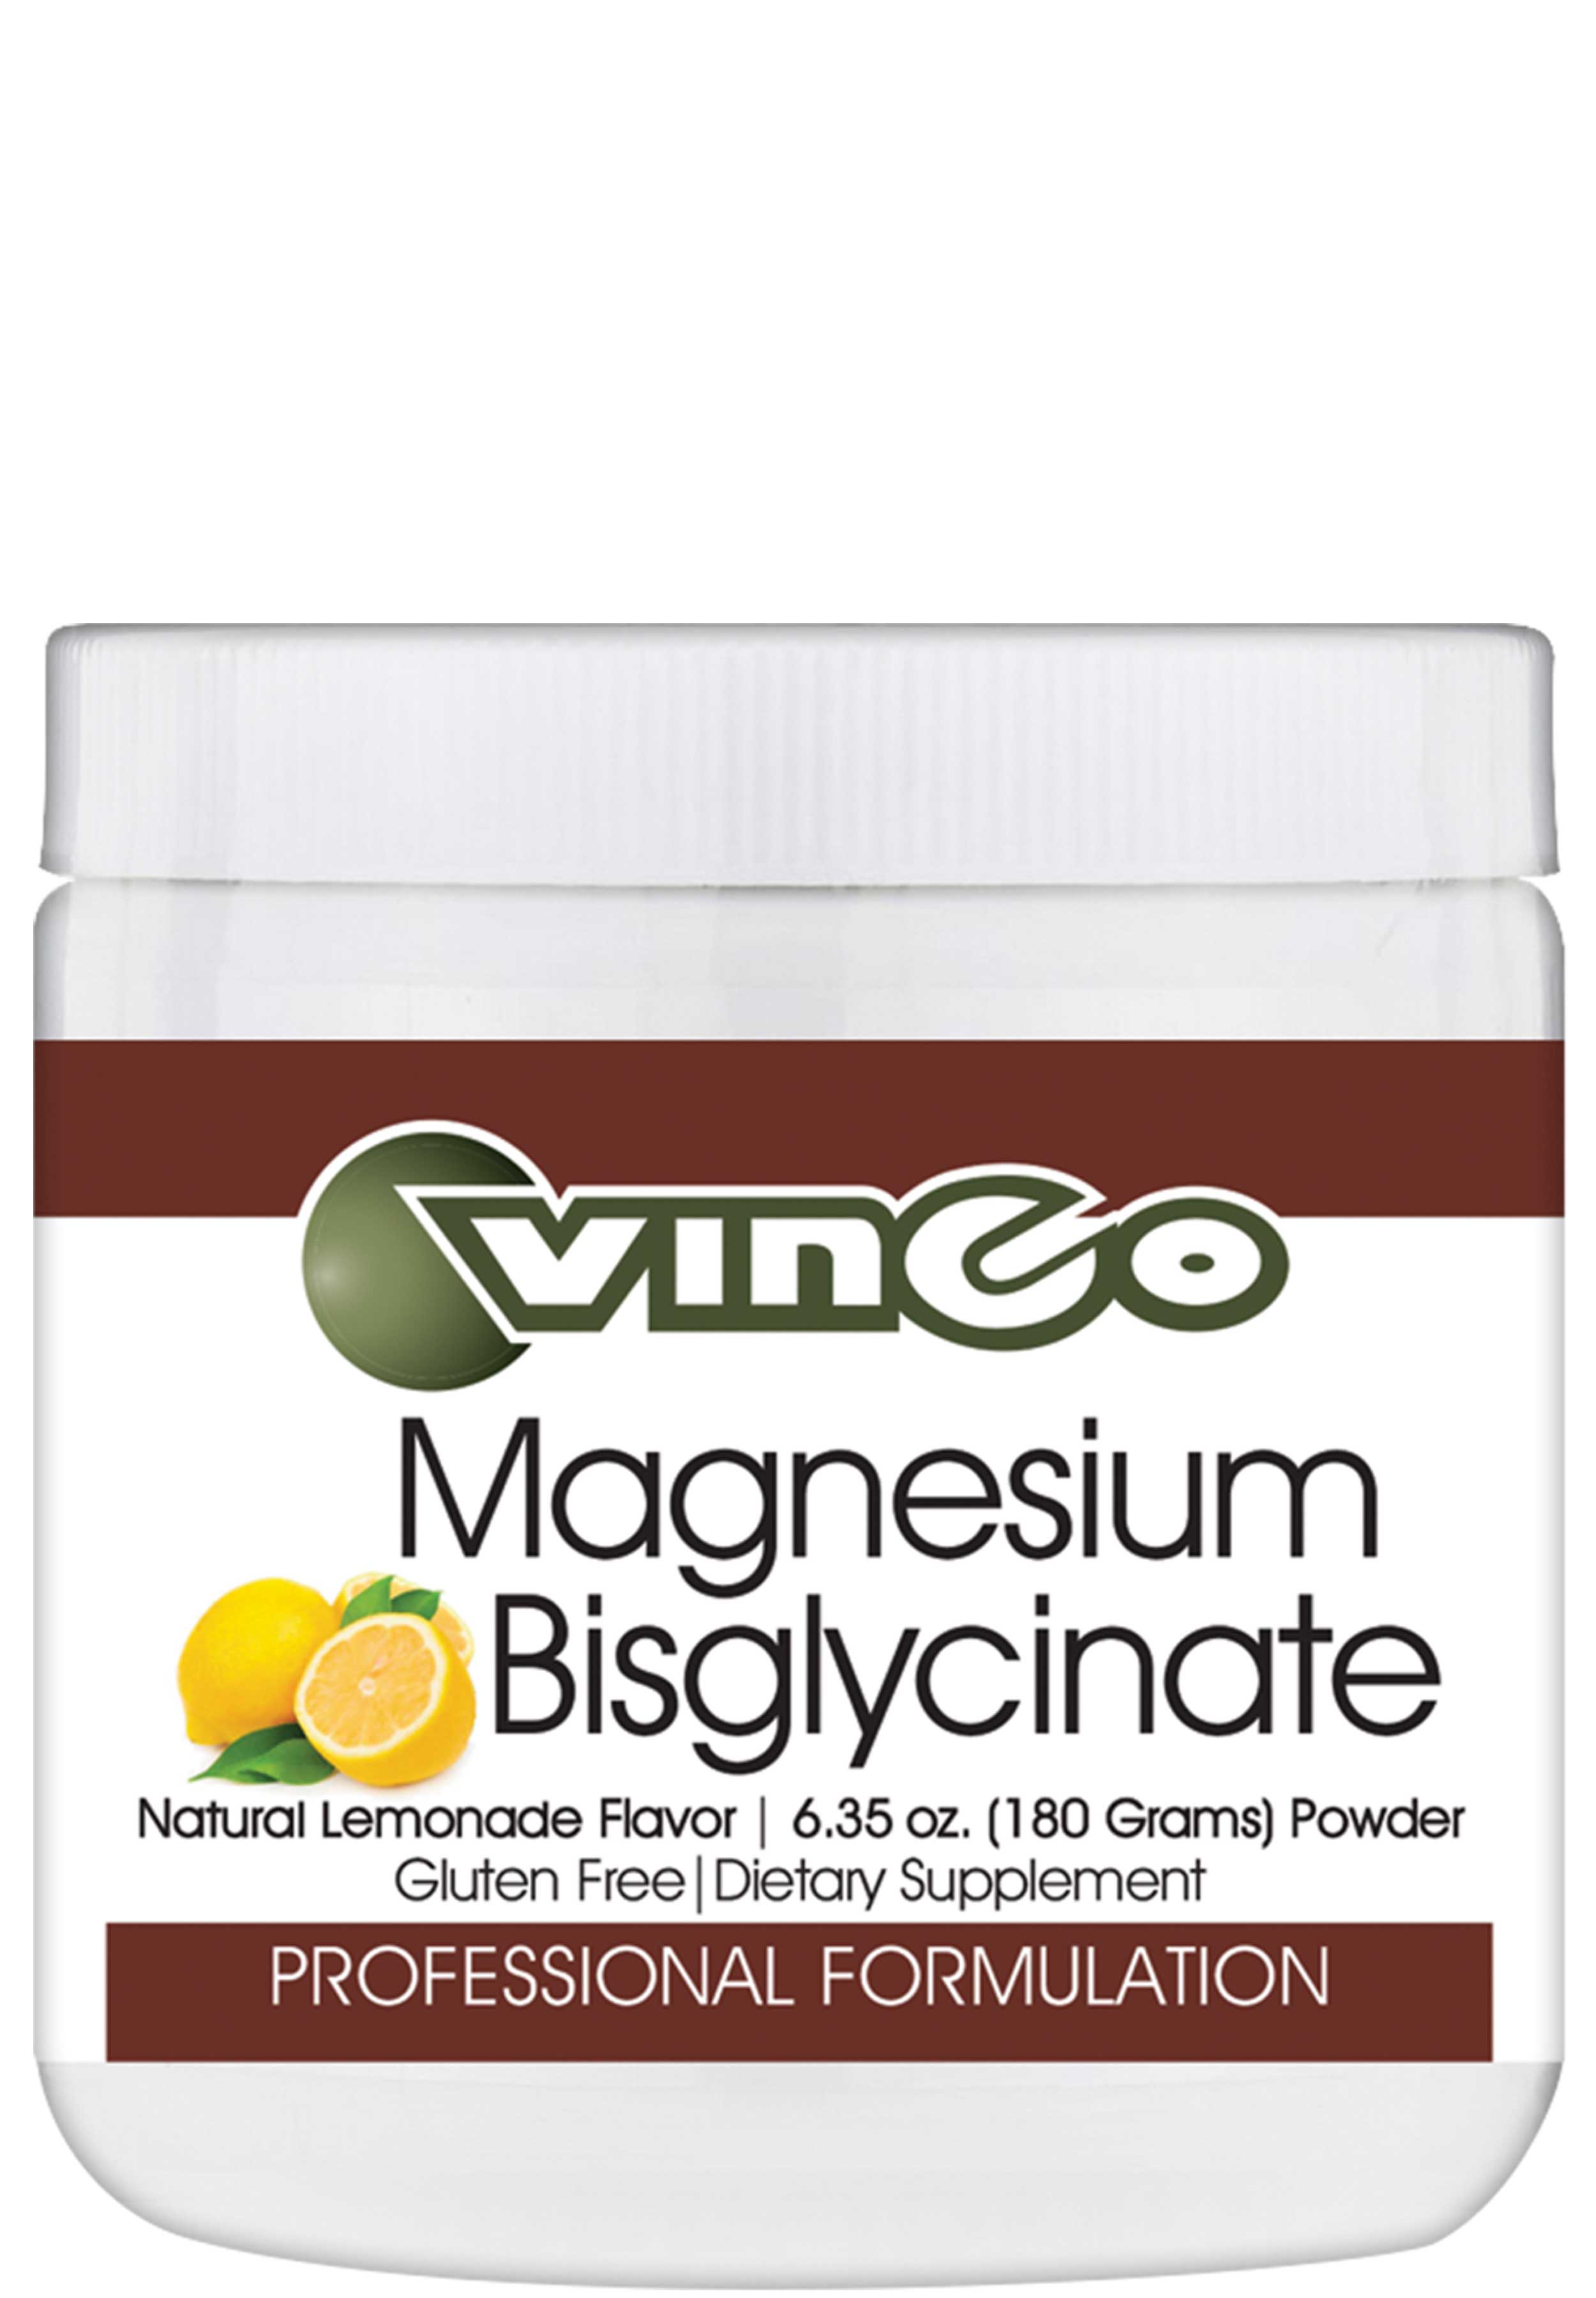 Vinco Magnesium Bisglycinate